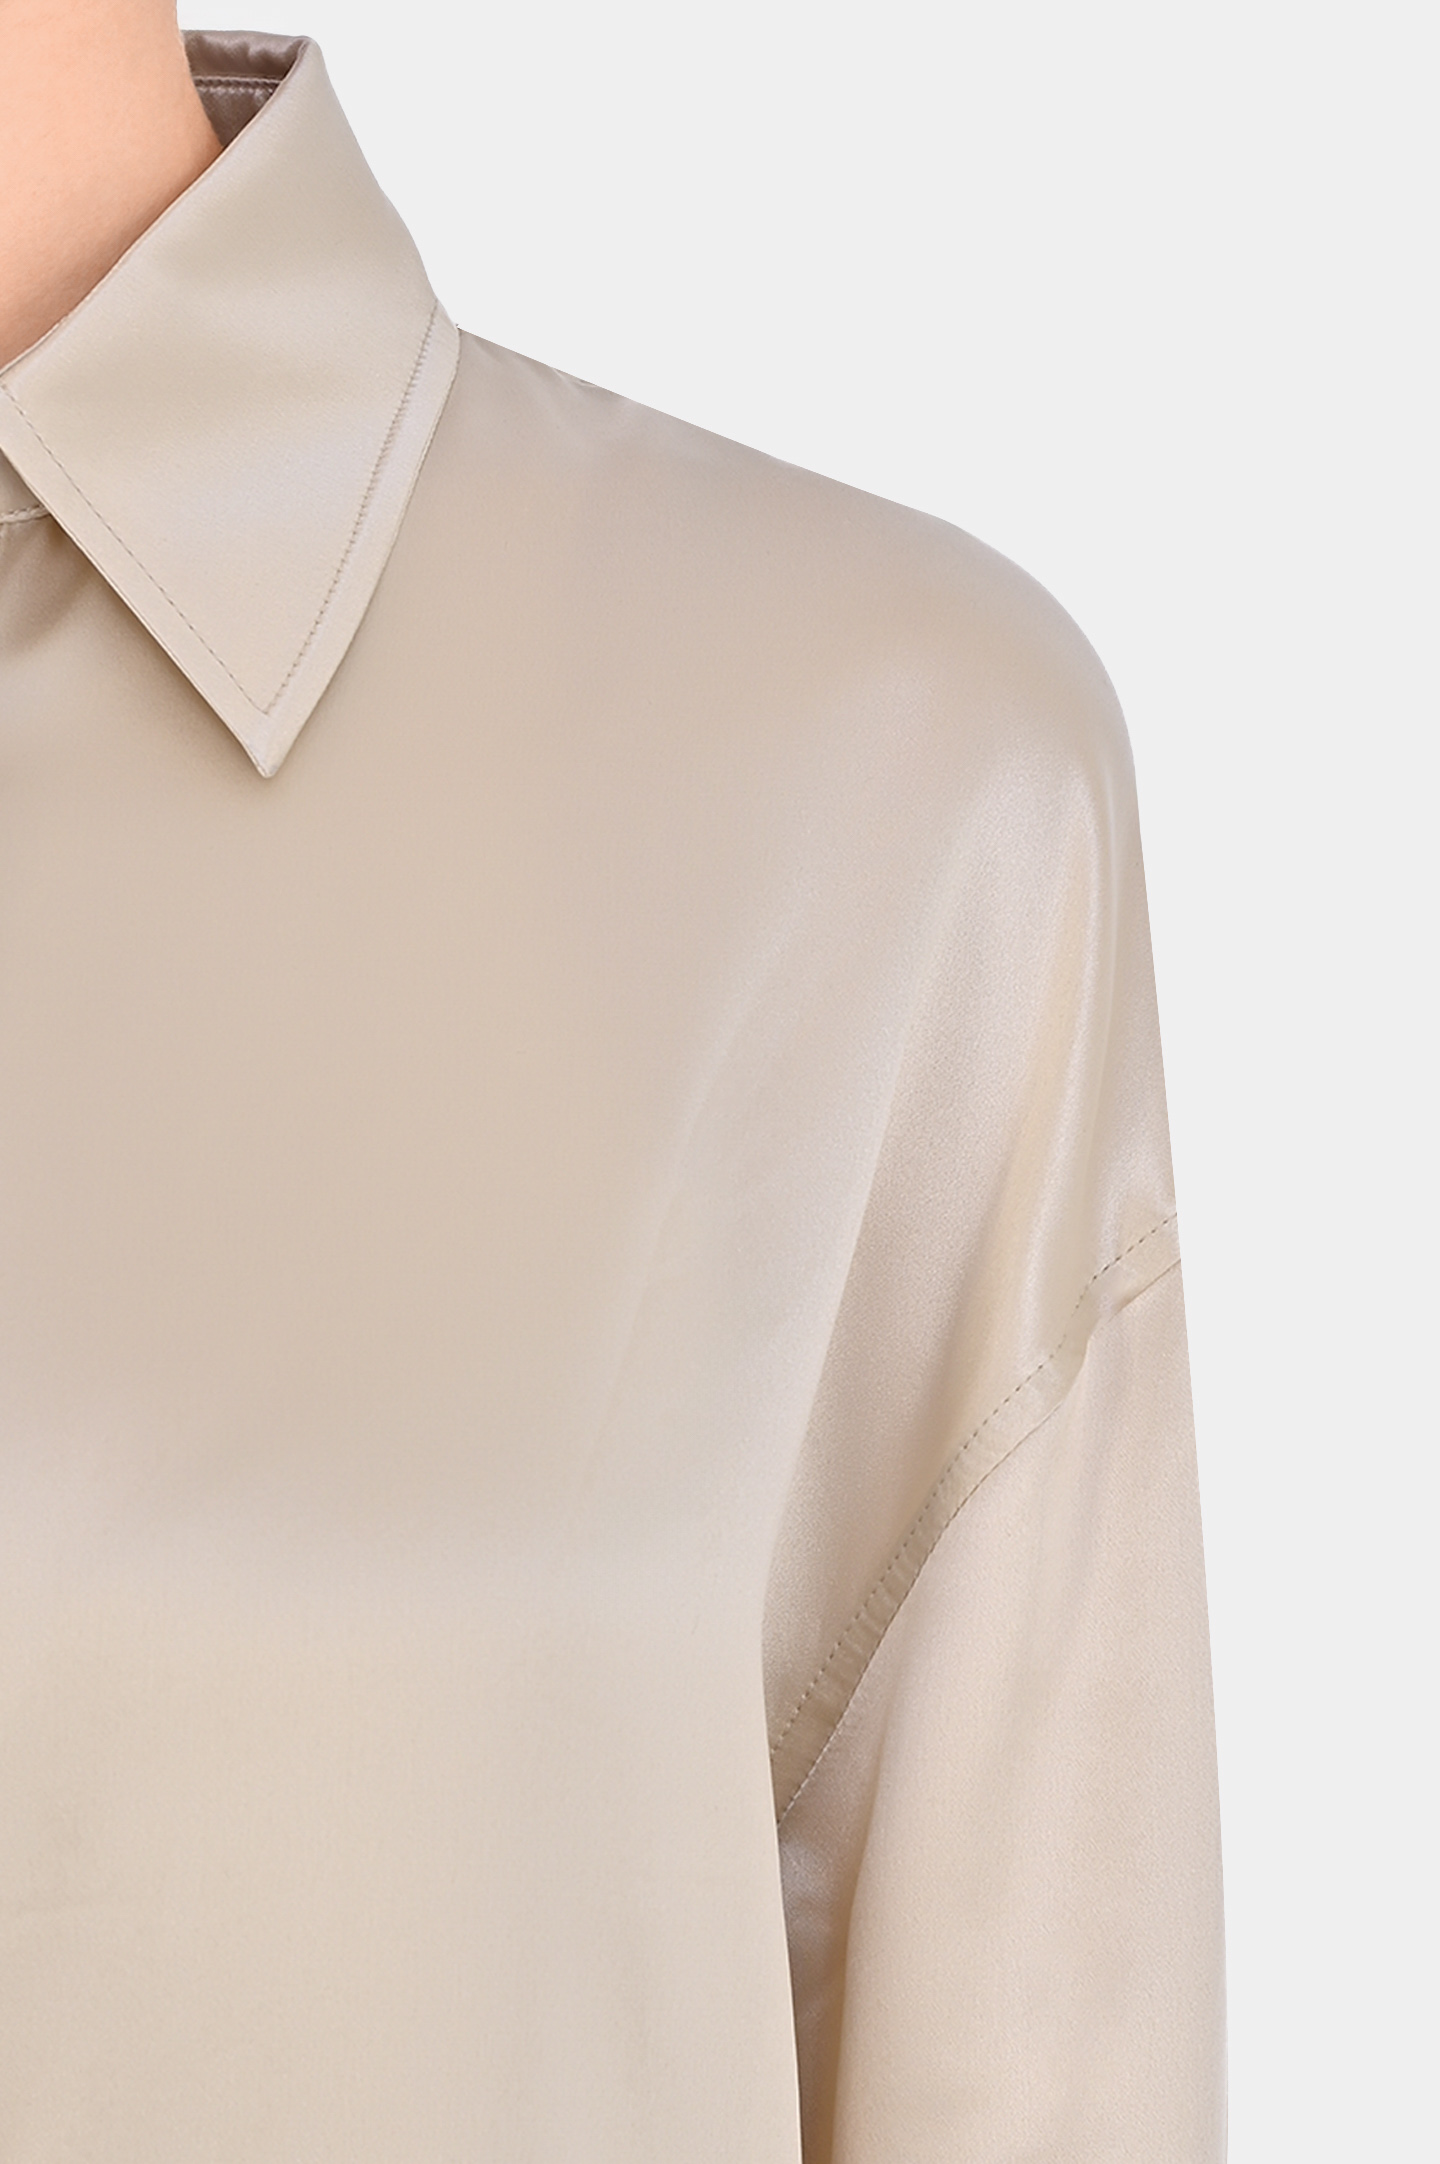 Блуза-рубашки из шелка JACOB LEE WSS016SS24PW, цвет: Светло-бежевый, Женский